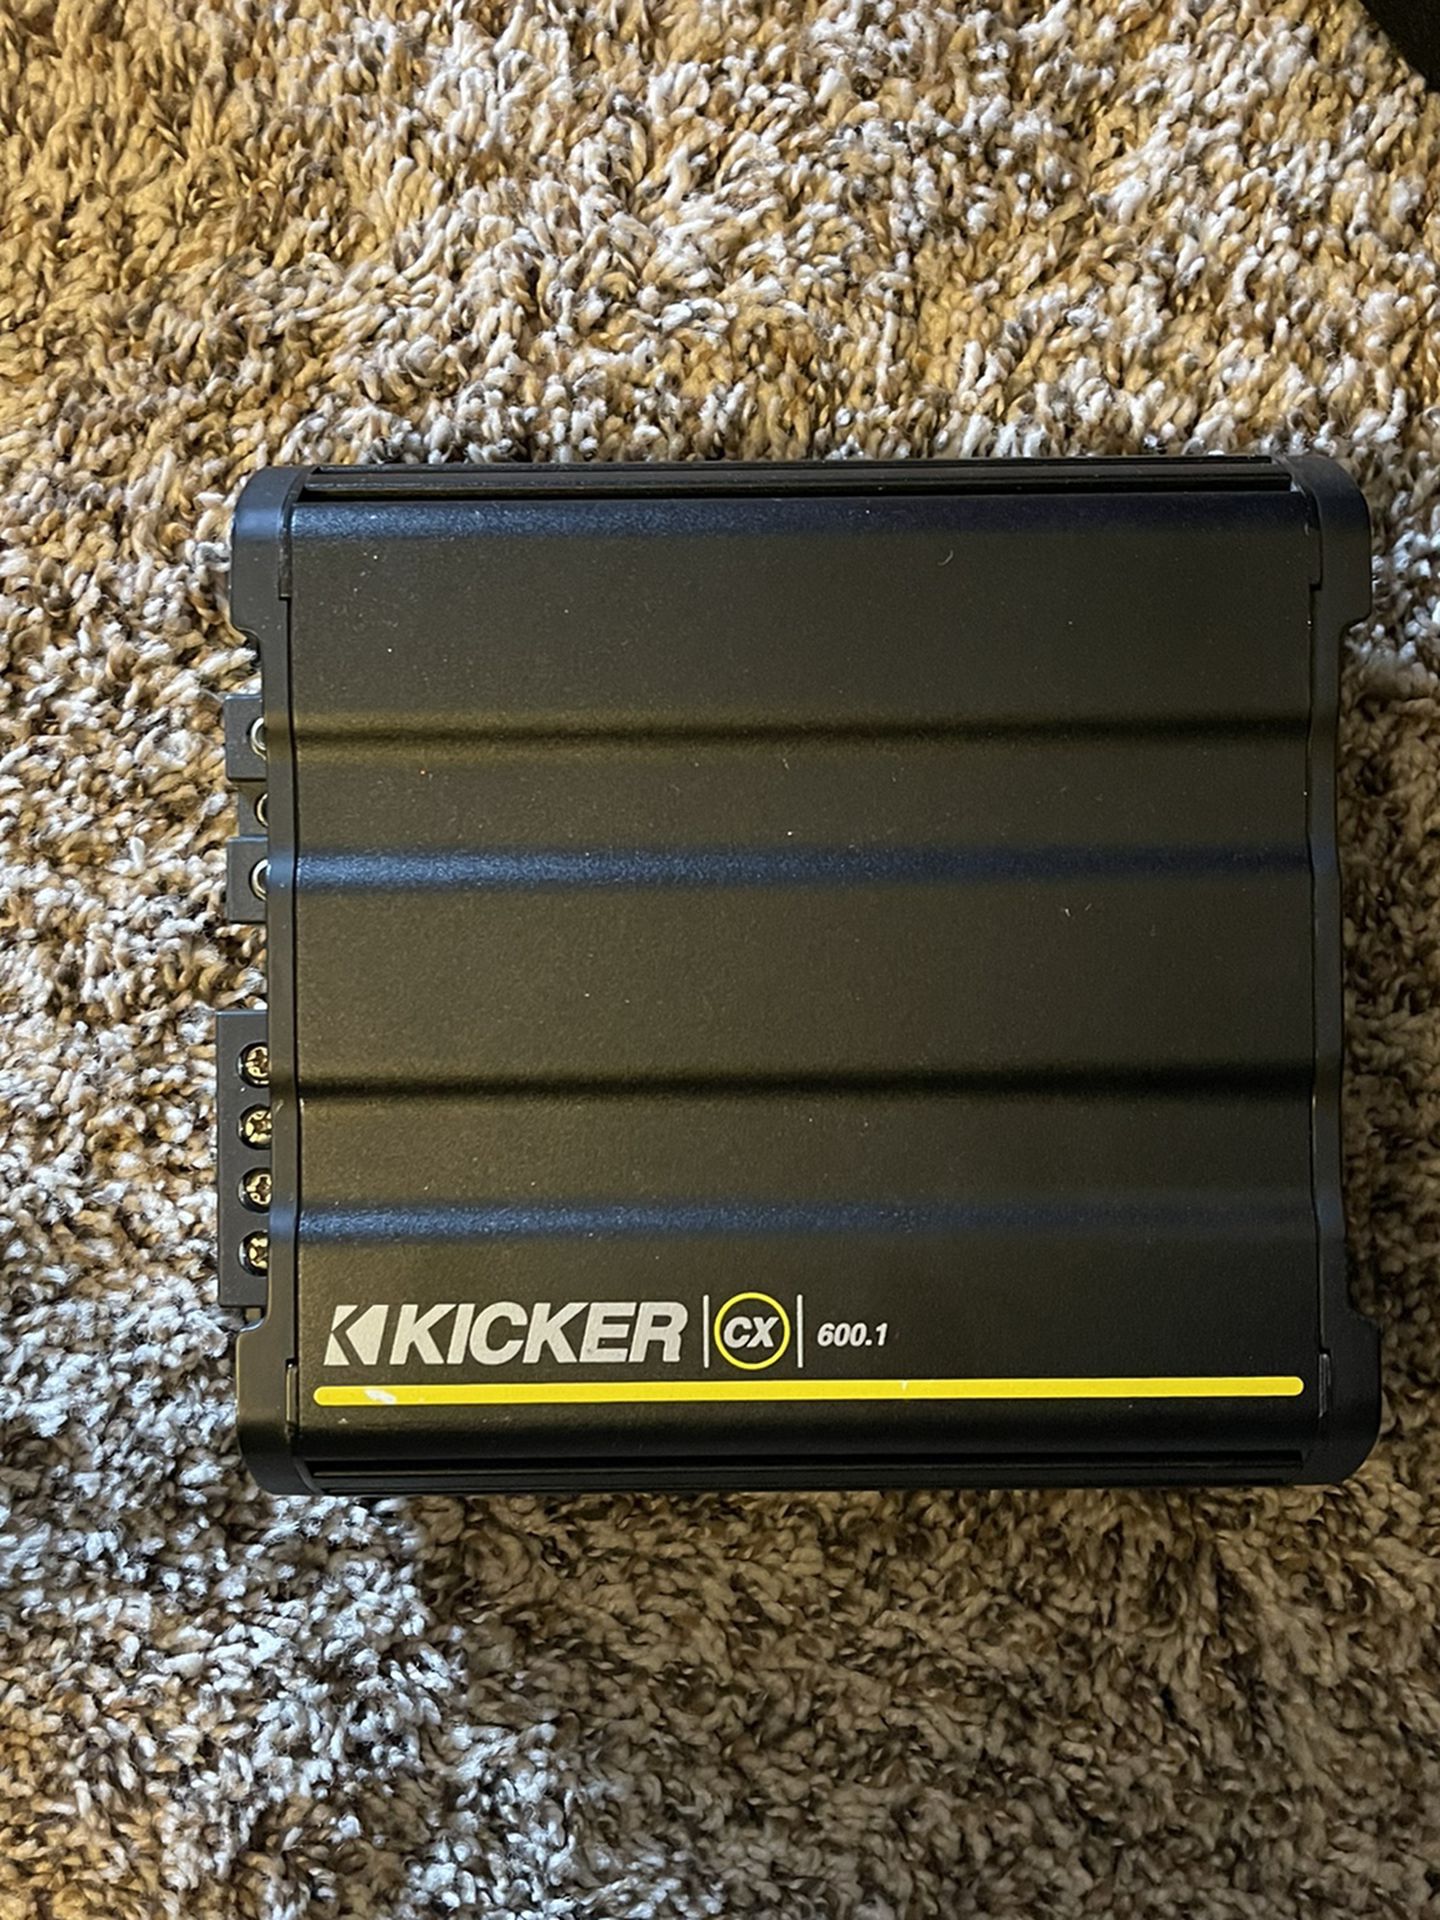 Kicker CX 600.1 Mono Car Amplifier